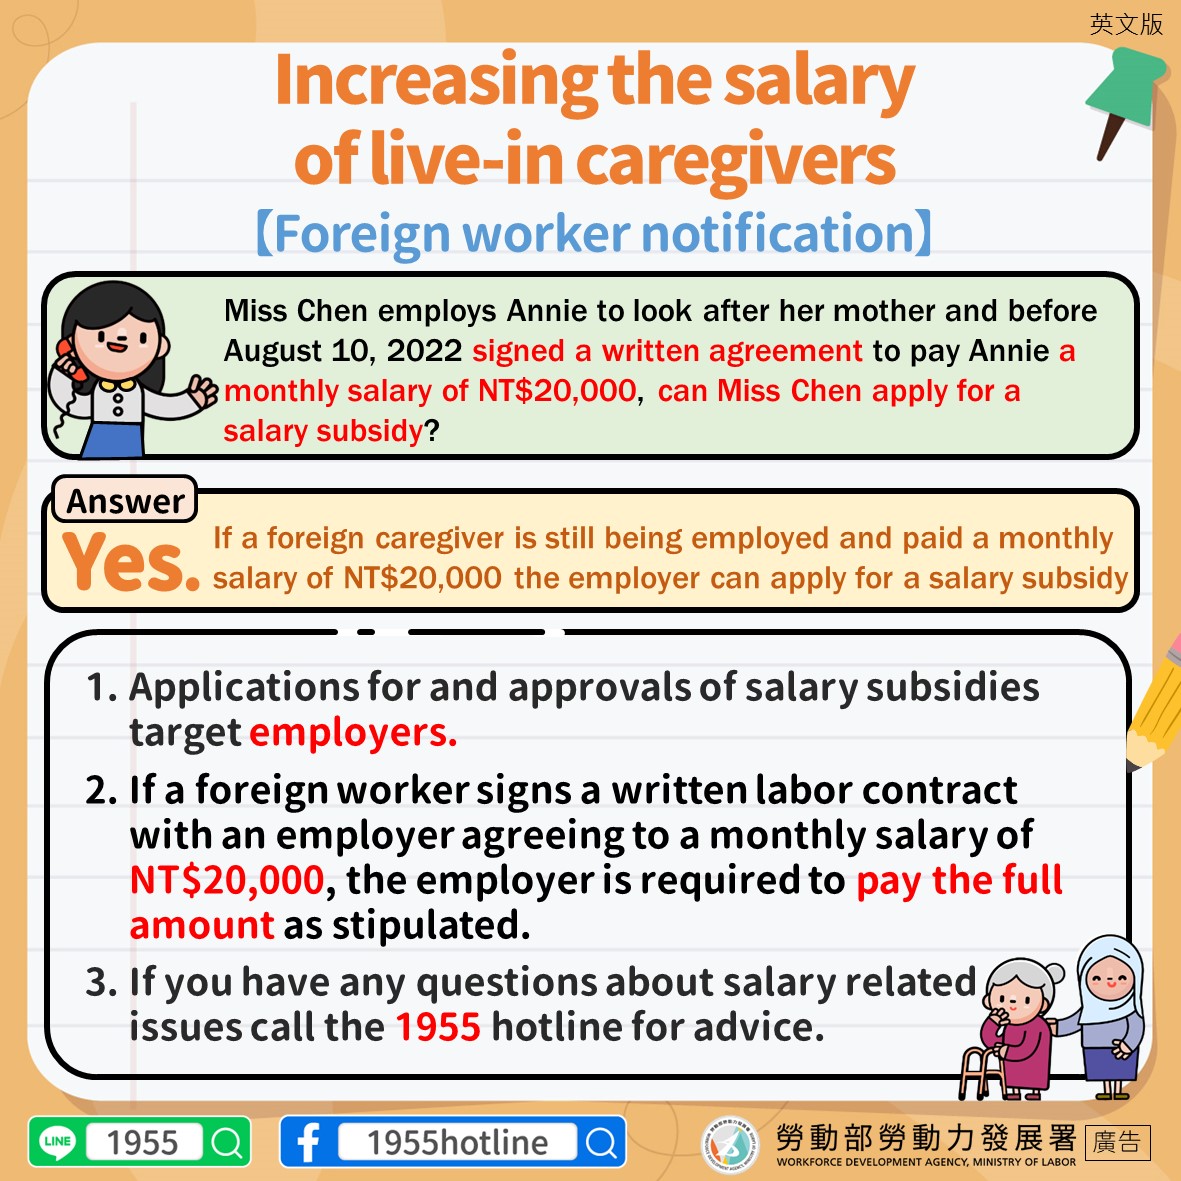 1110830-聘僱中薪資已達2萬元可以請領薪資補助-移工版-英.JPG